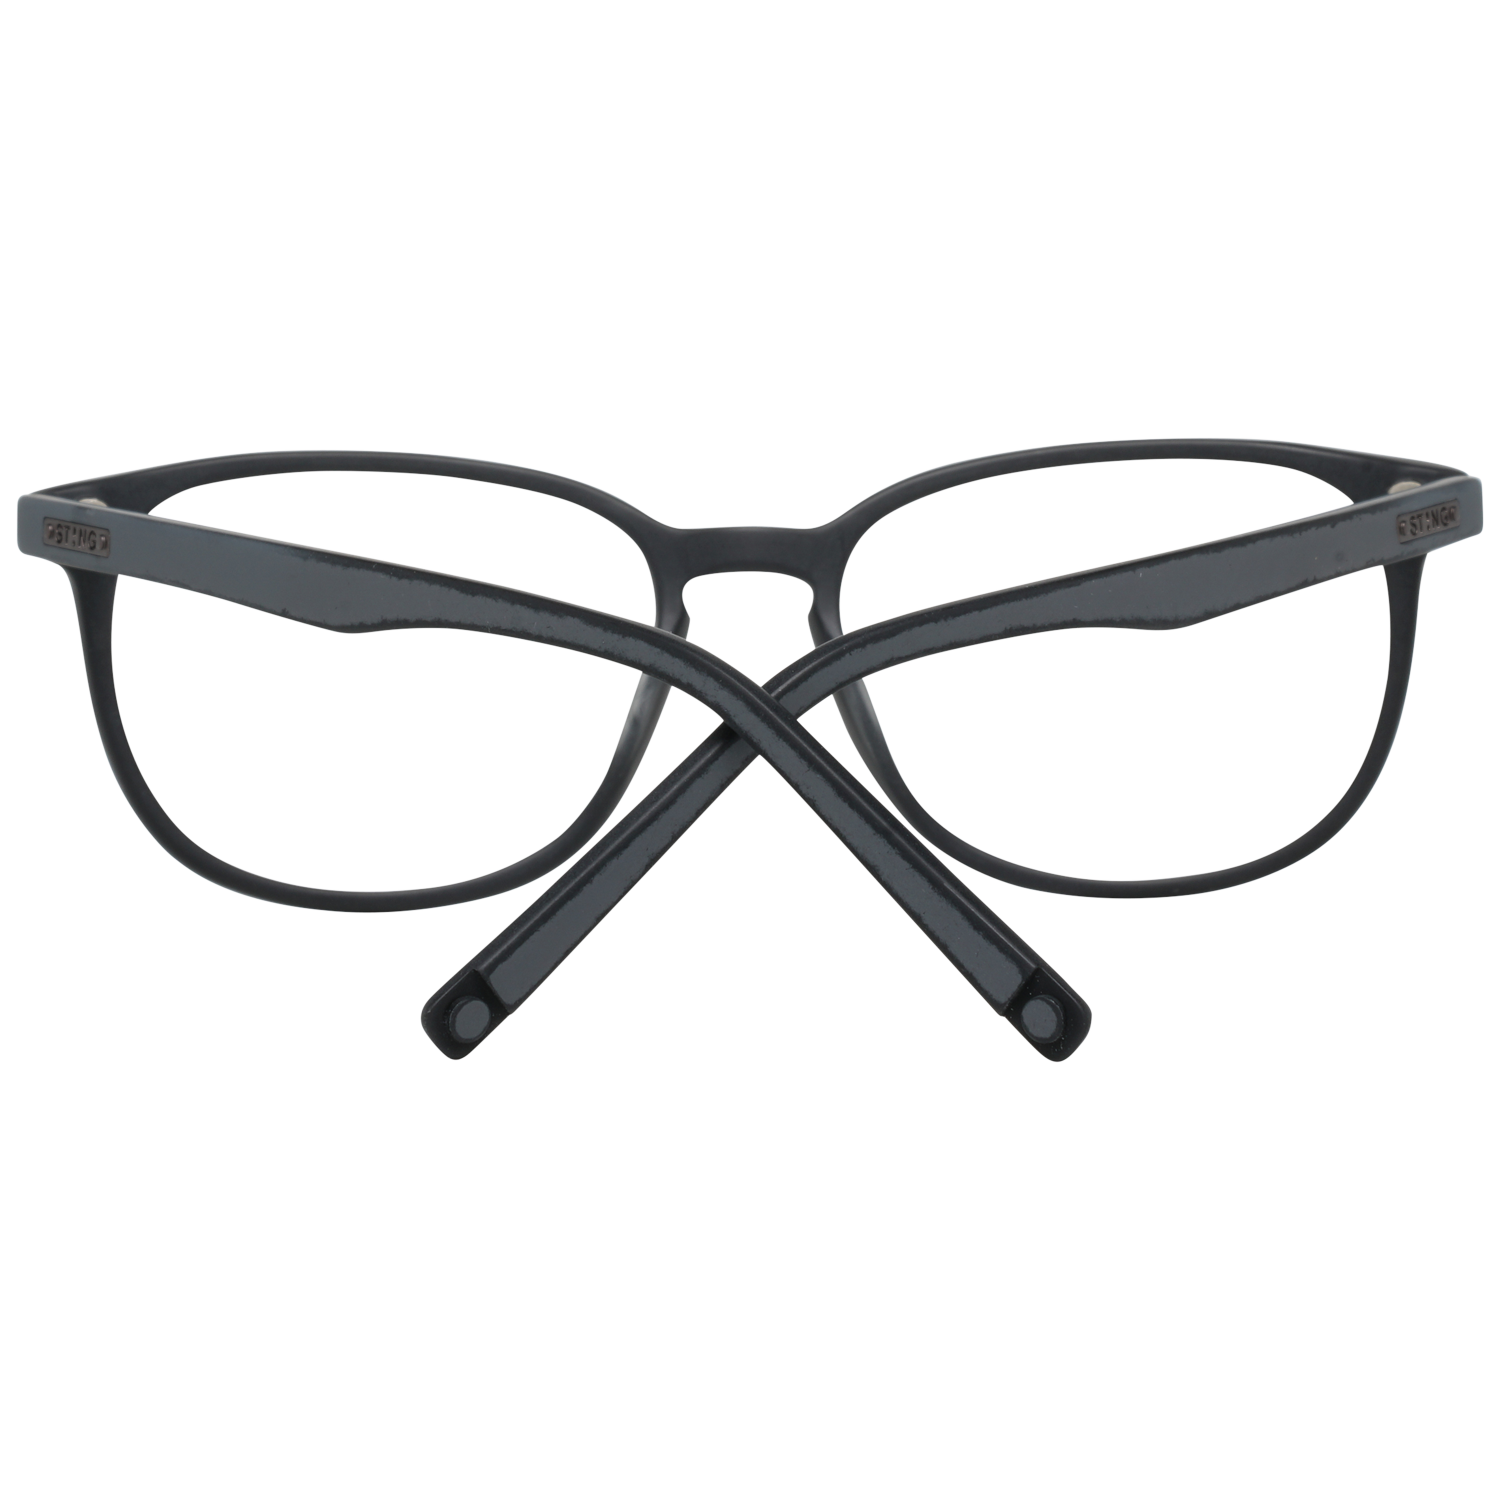 Sting Frames Sting Optical Frame VST040 1EPM 53 Eyeglasses Eyewear UK USA Australia 